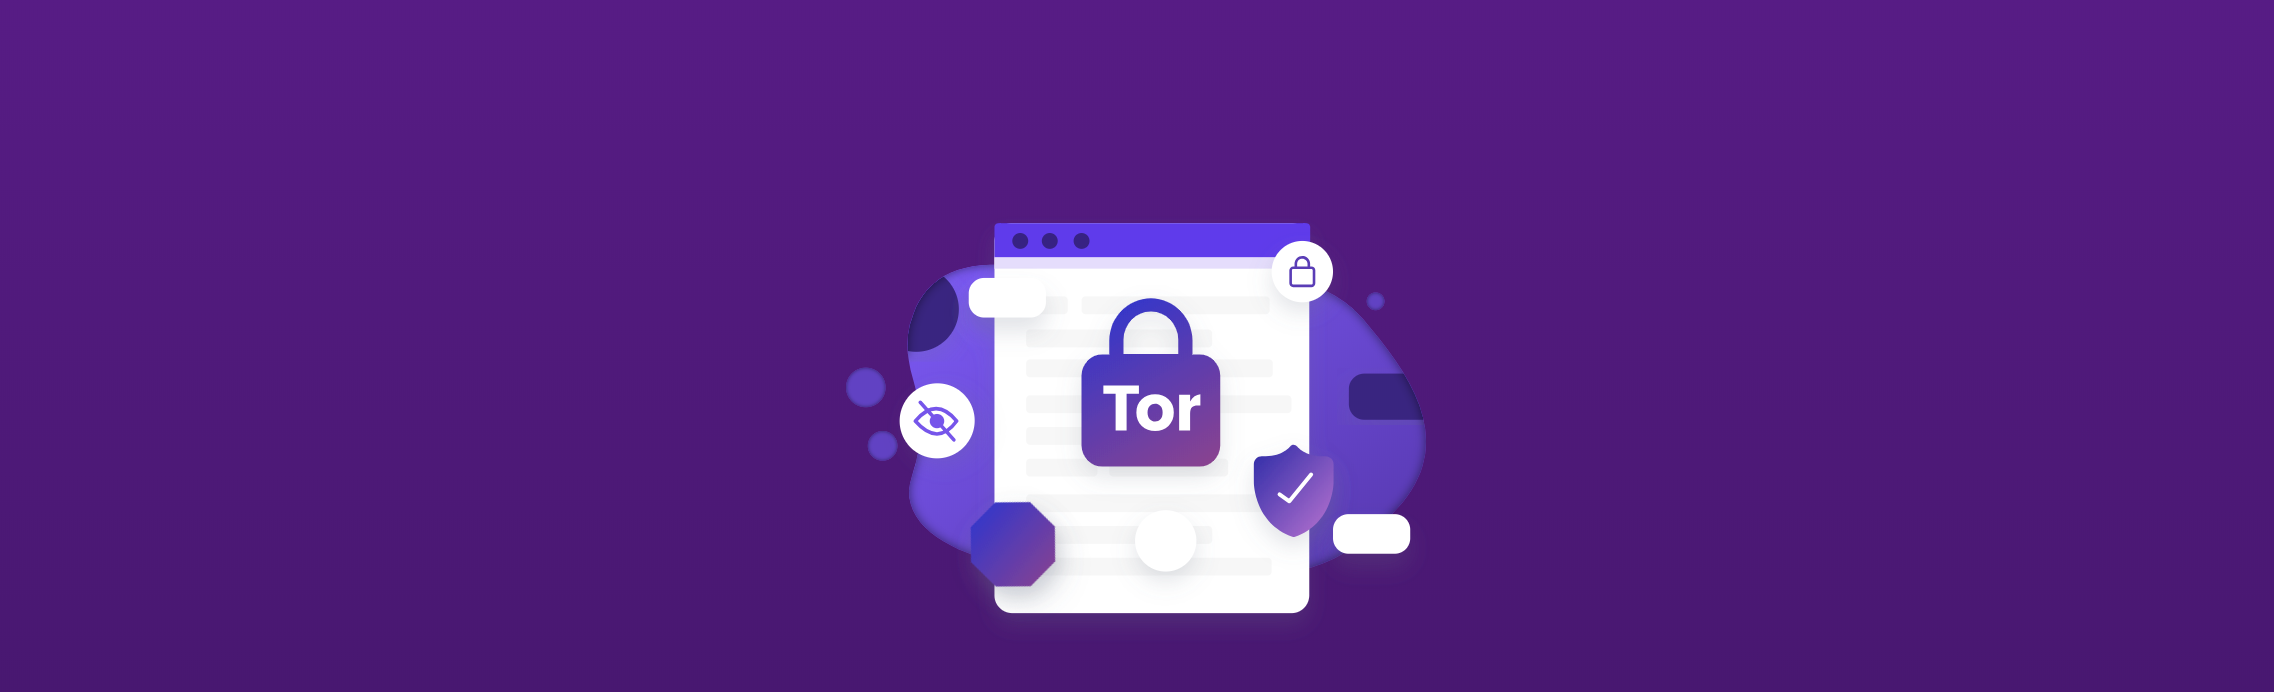 Tor browser is not blocking mega скачать тор браузер с последним флеш плеером mega